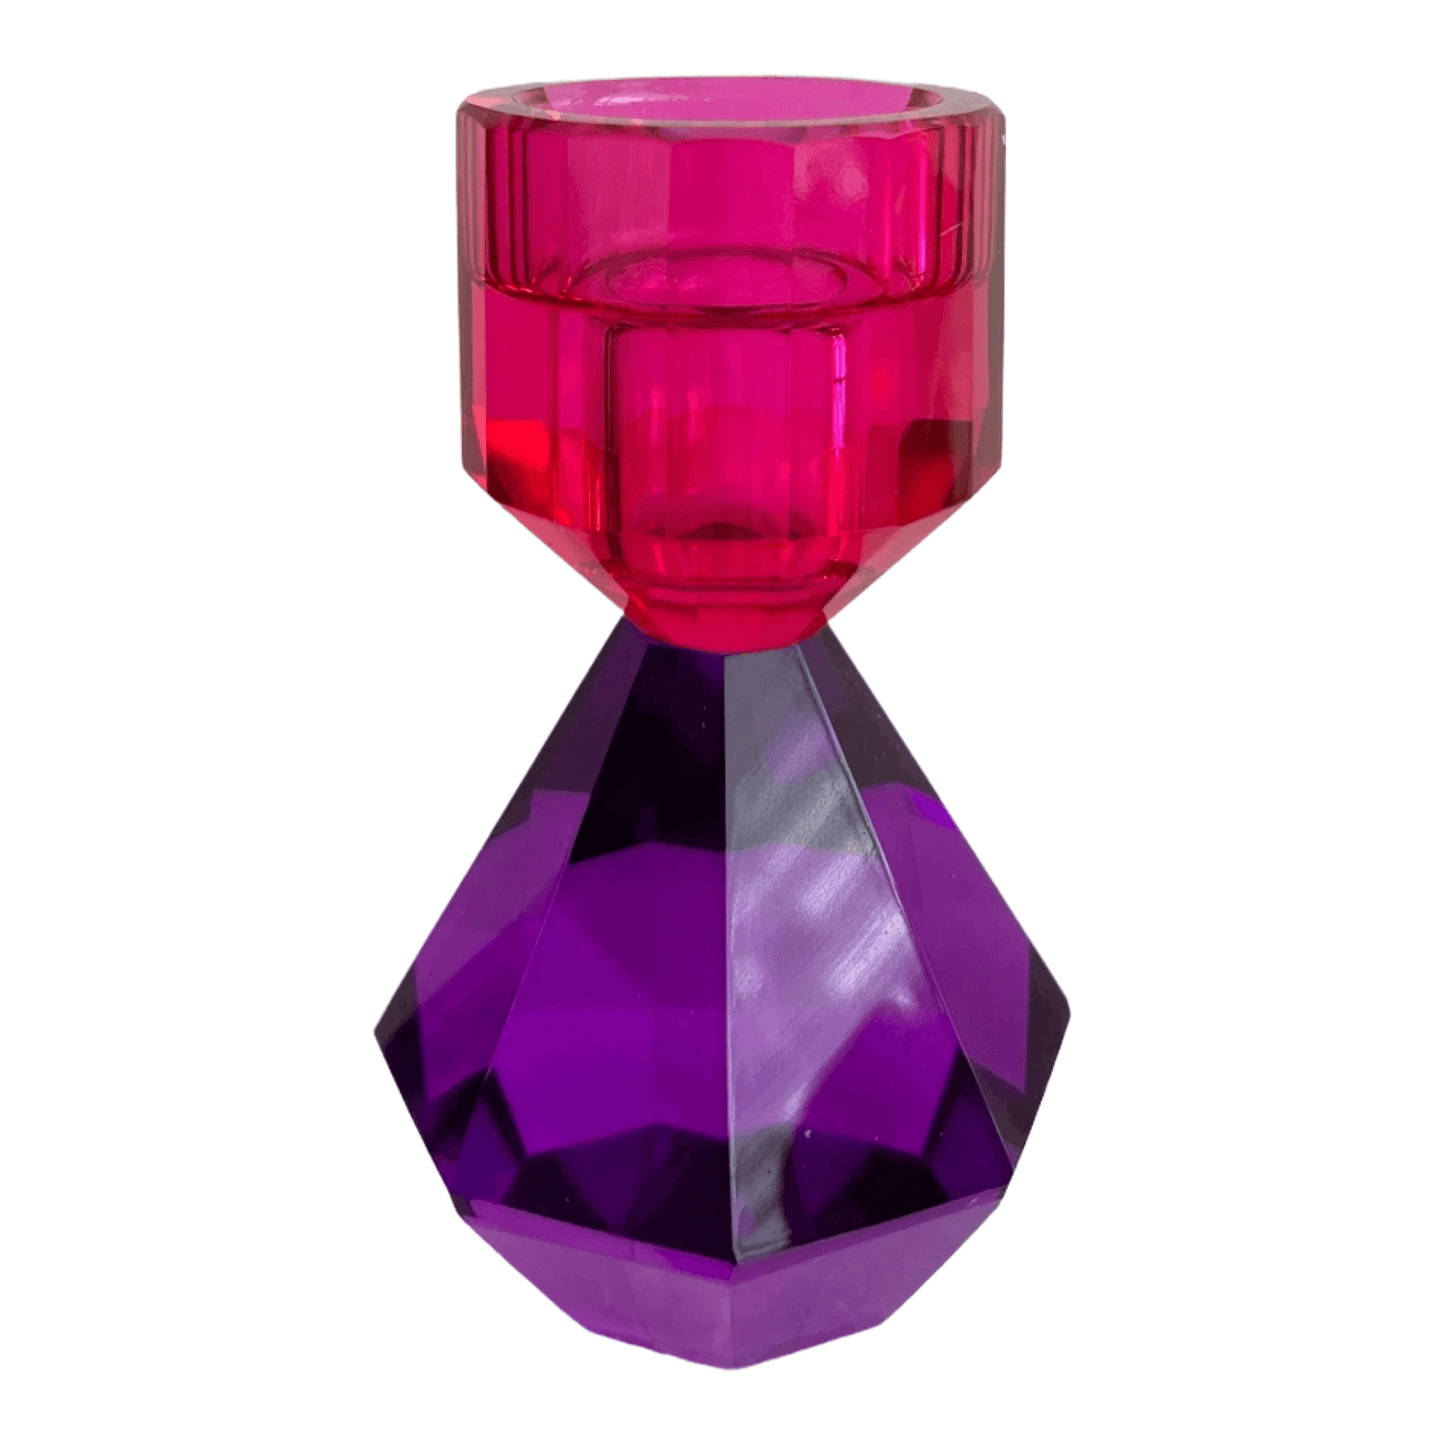 Glazen kandelaar van kristalglas in paars/roze